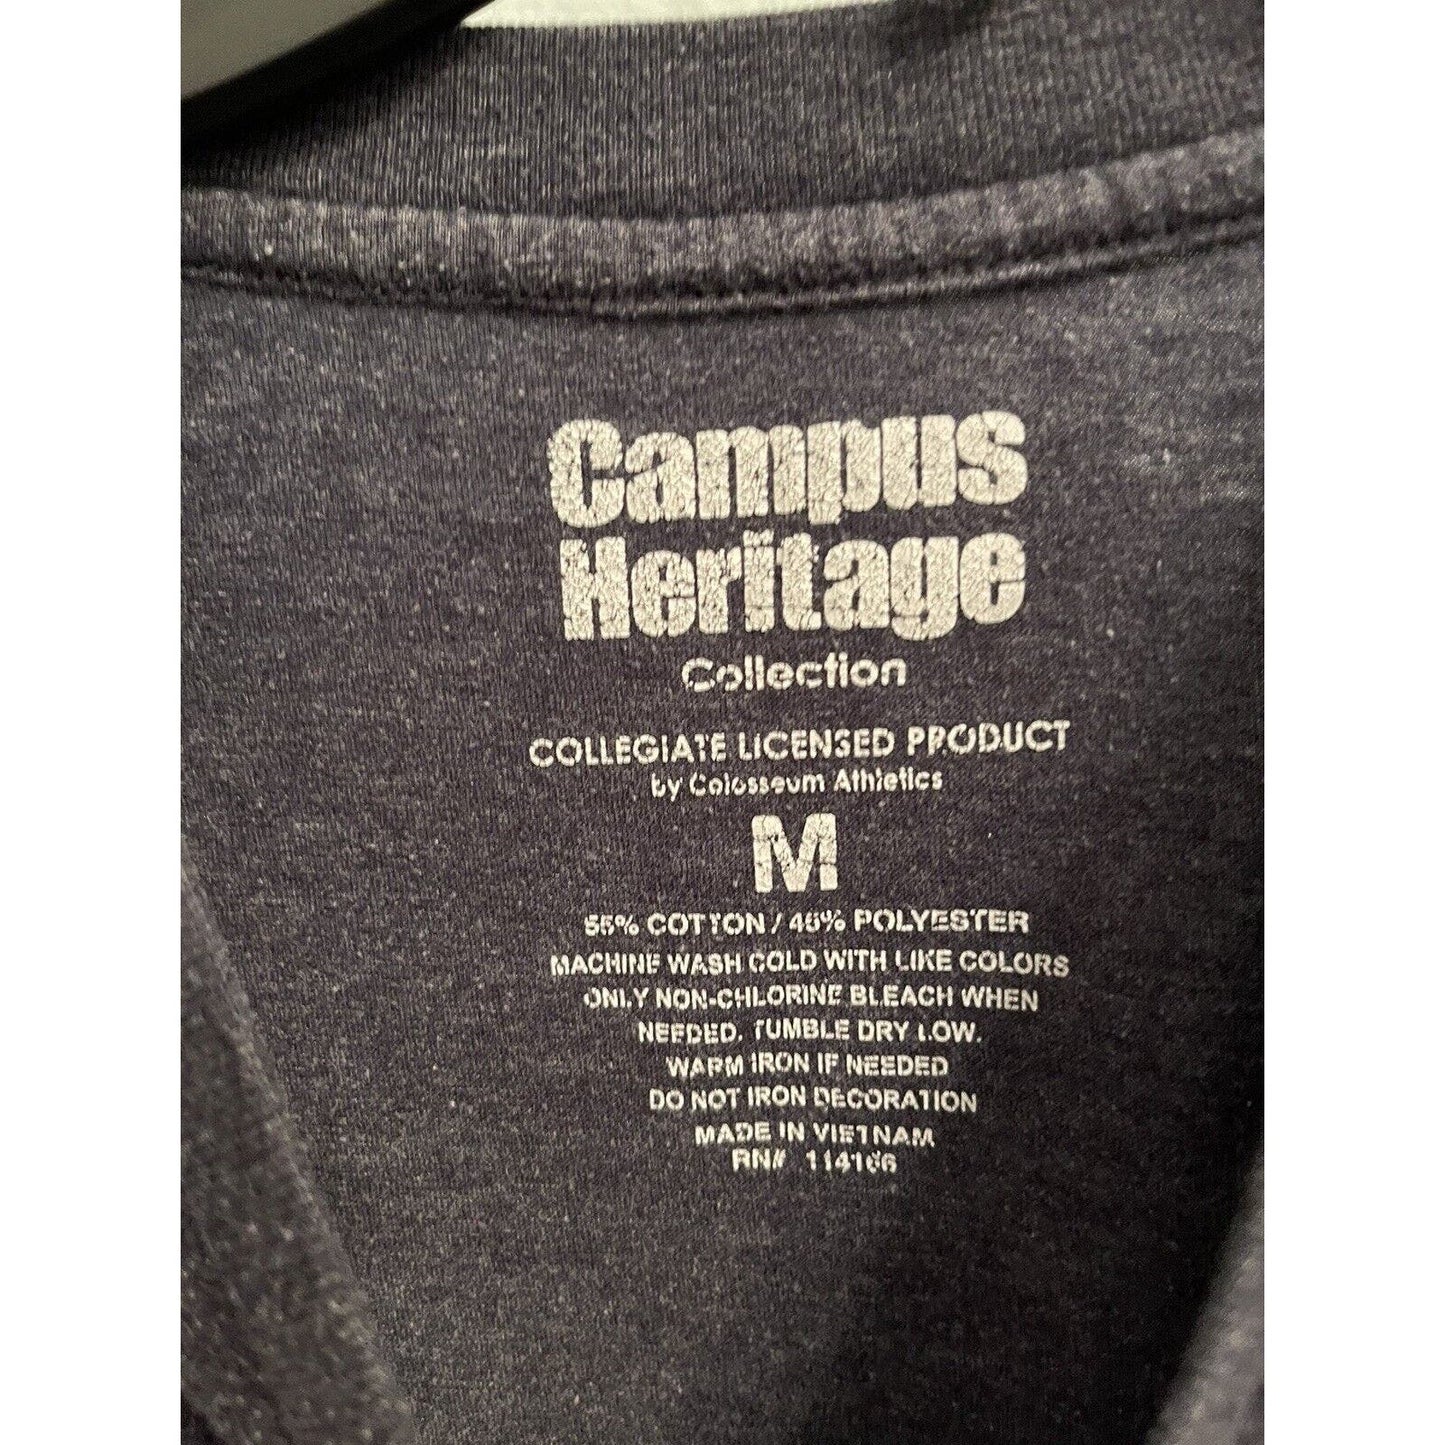 Syracuse Go Orange V-Neck T-Shirt Women's Size Medium Campus Heritage